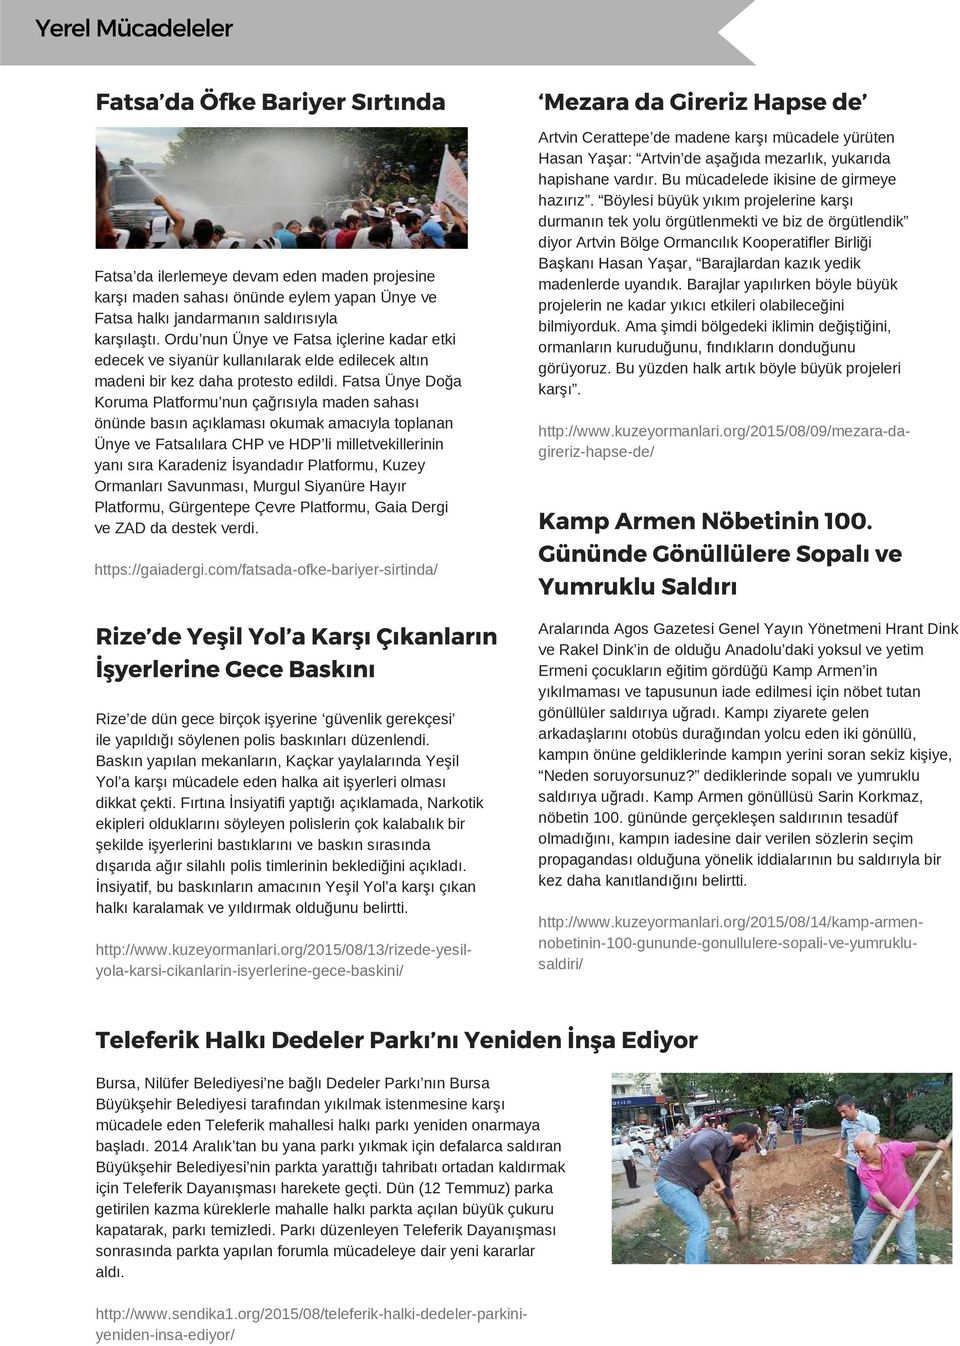 Fatsa Ünye Doğa Koruma Platformu nun çağrısıyla maden sahası önünde basın açıklaması okumak amacıyla toplanan Ünye ve Fatsalılara CHP ve HDP li milletvekillerinin yanı sıra Karadeniz İsyandadır